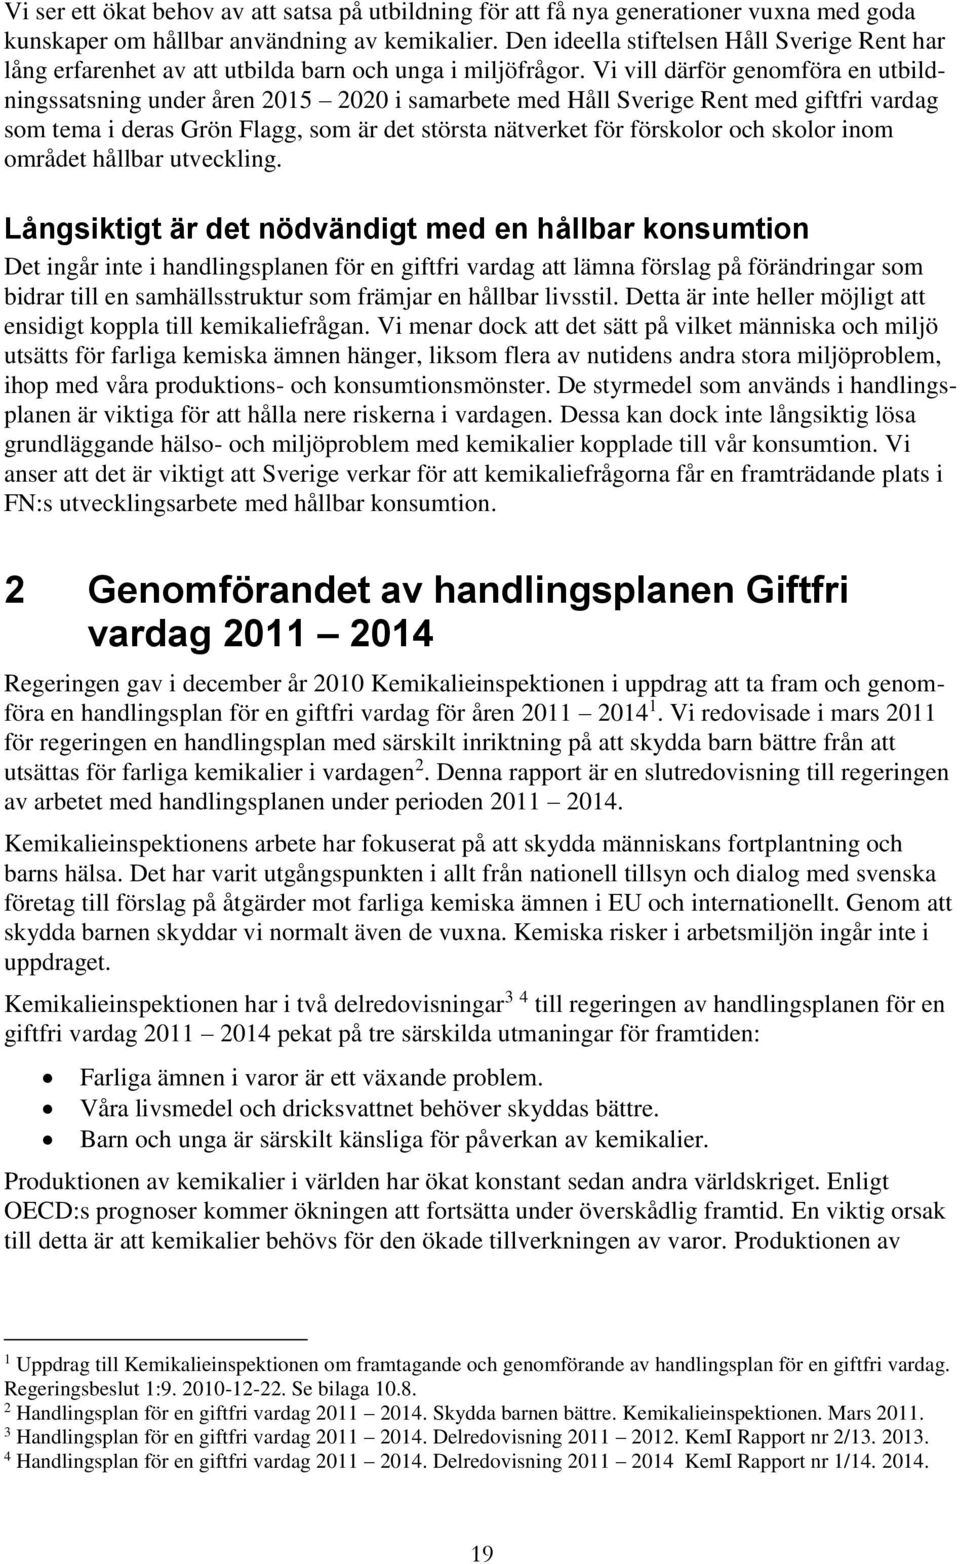 Vi vill därför genomföra en utbildningssatsning under åren 2015 2020 i samarbete med Håll Sverige Rent med giftfri vardag som tema i deras Grön Flagg, som är det största nätverket för förskolor och